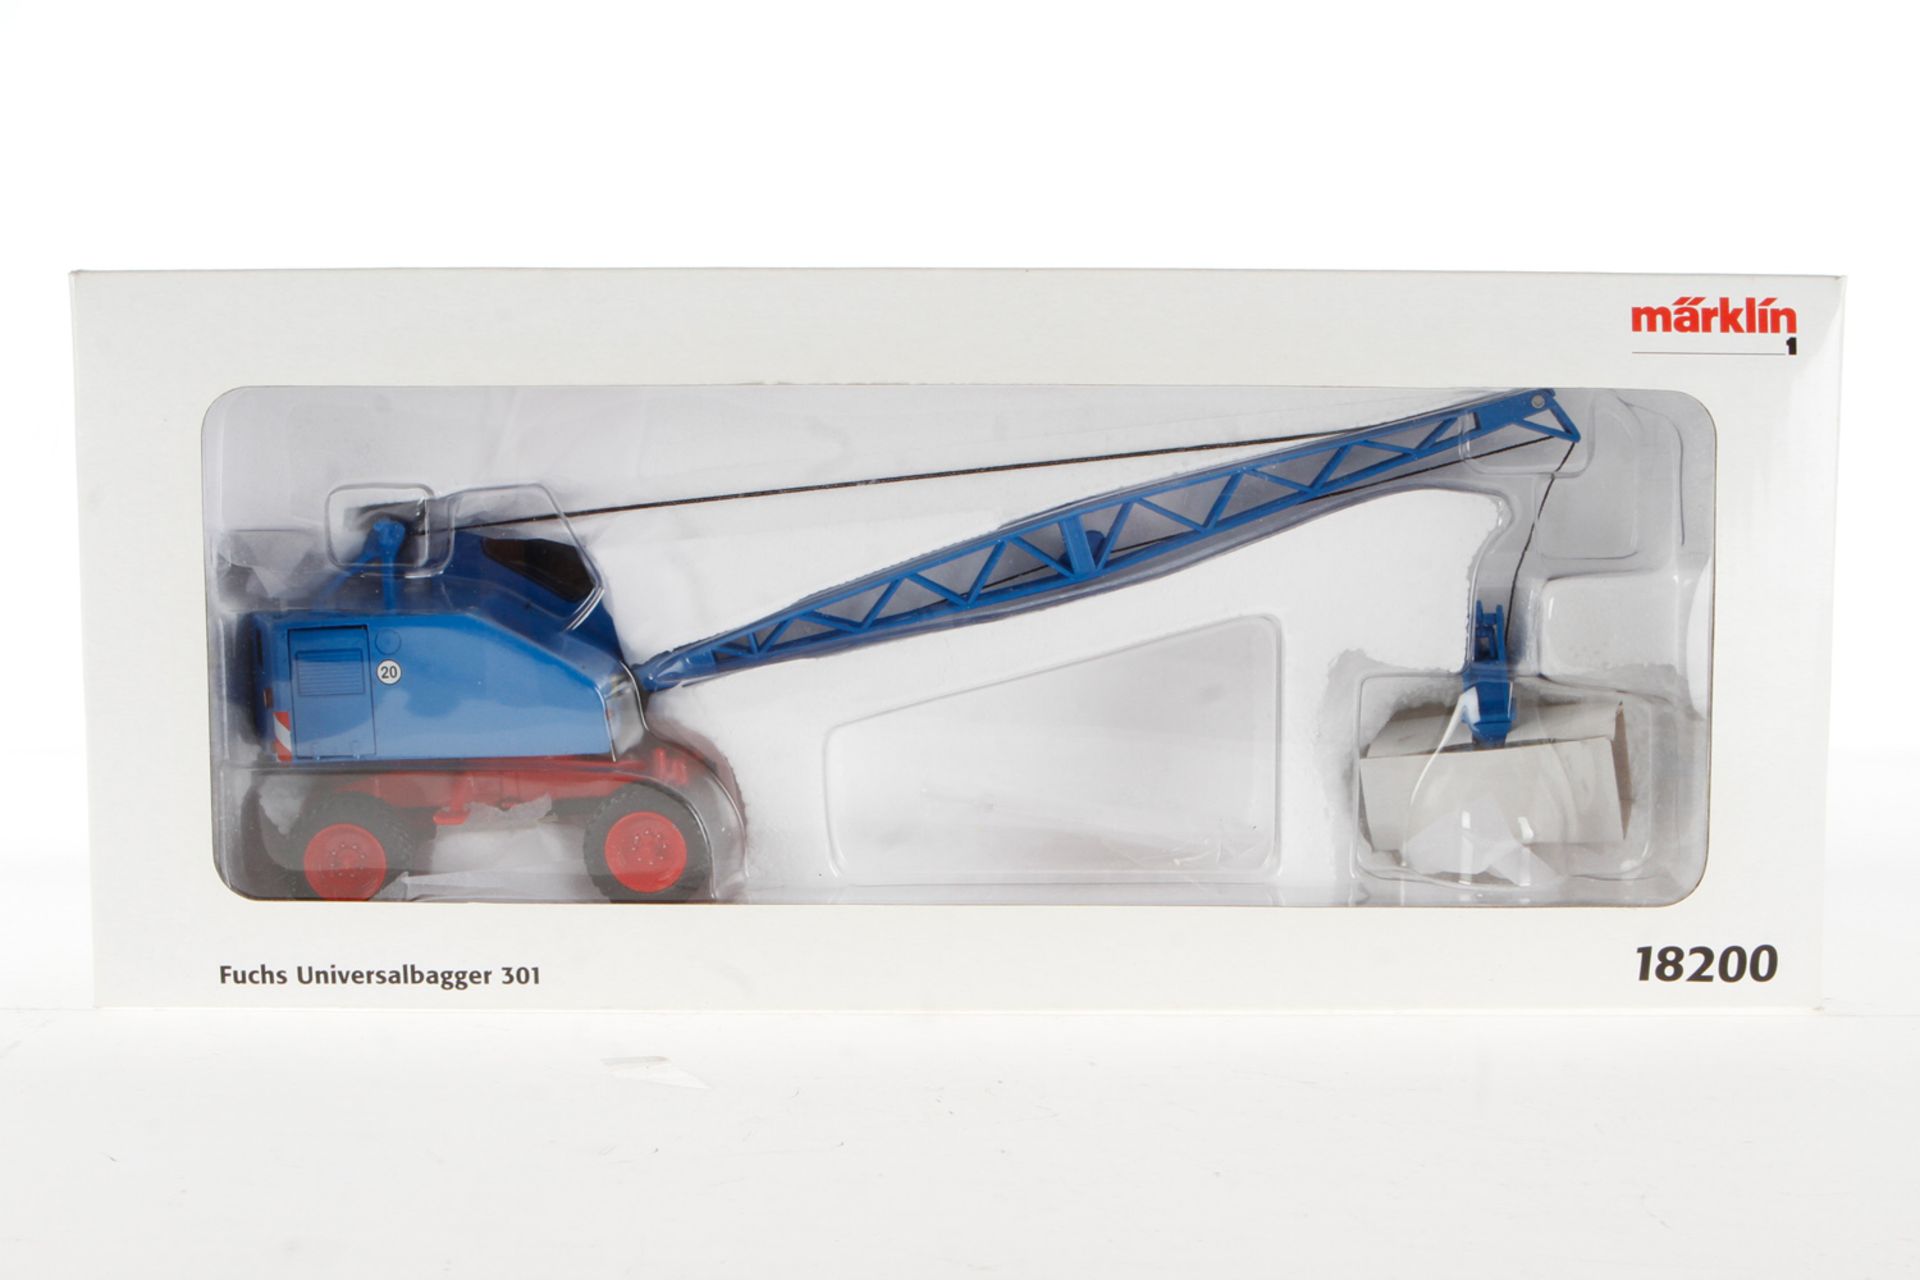 Märklin Fuchs Universalbagger "301" 18200, für Spur 1, blau, leichte Alterungsspuren, im